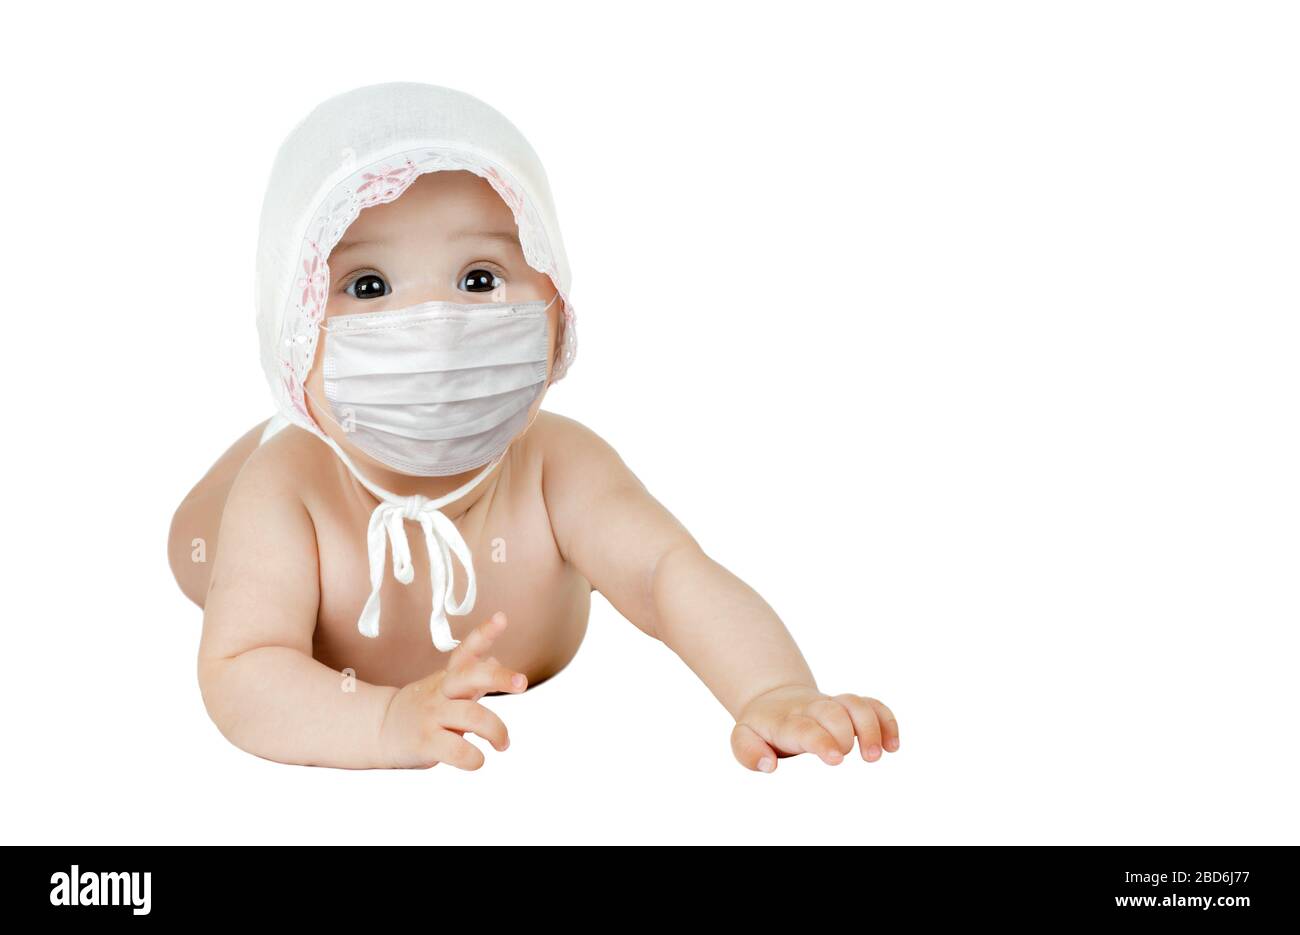 bambino piccolo in maschera medica, su sfondo bianco, isolato. Concetto covid-19 coronavirus pandemico Foto Stock